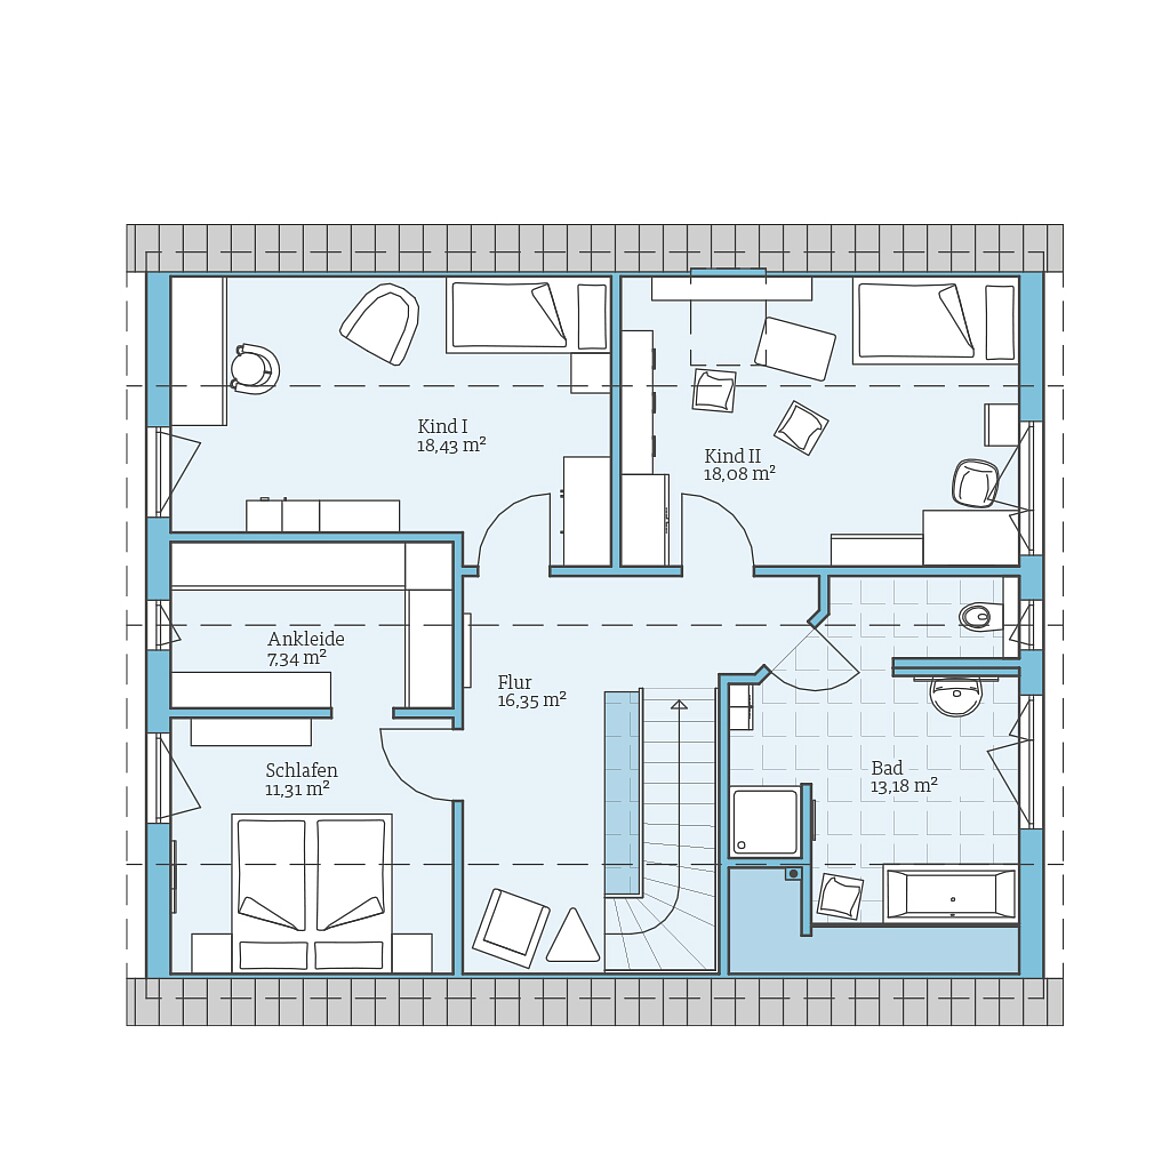 Prefabricated house Variant 35-174: Top floor plan